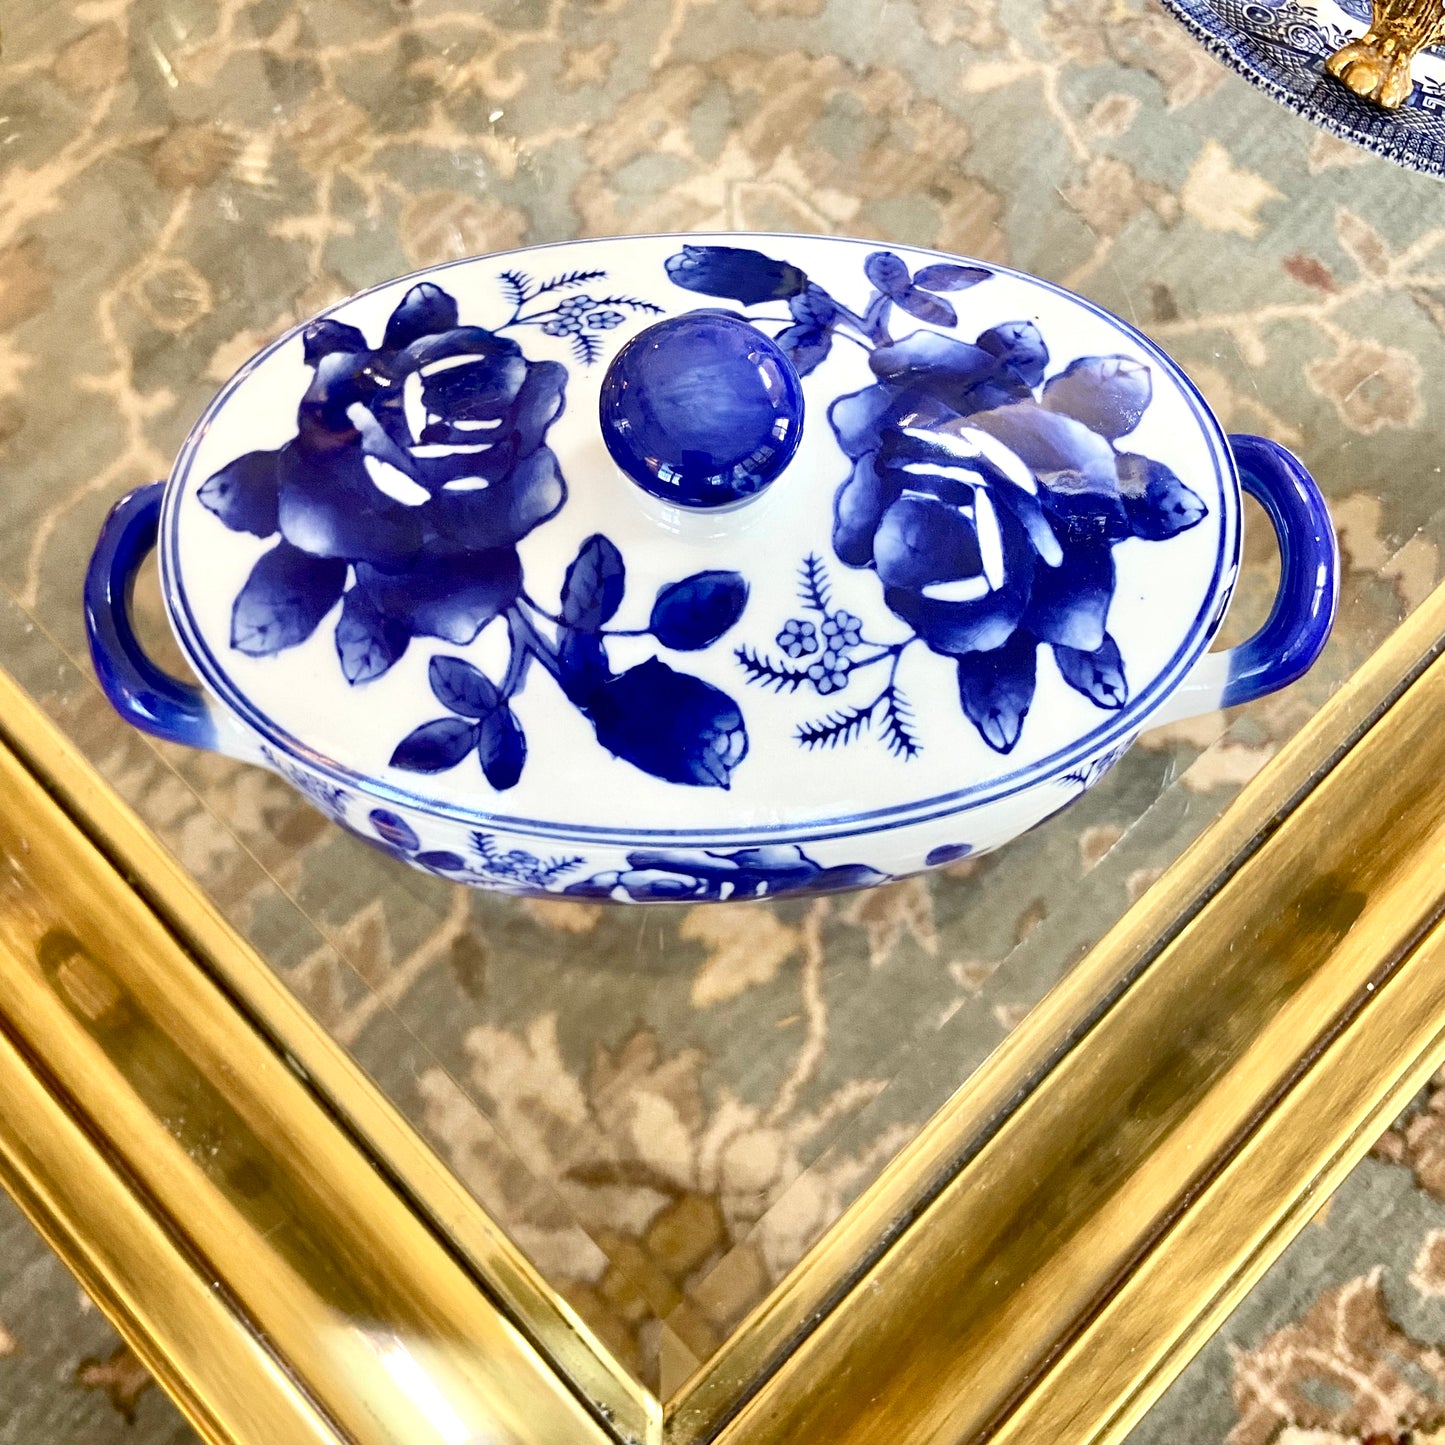 Vintage blue & white floral jar with lid.